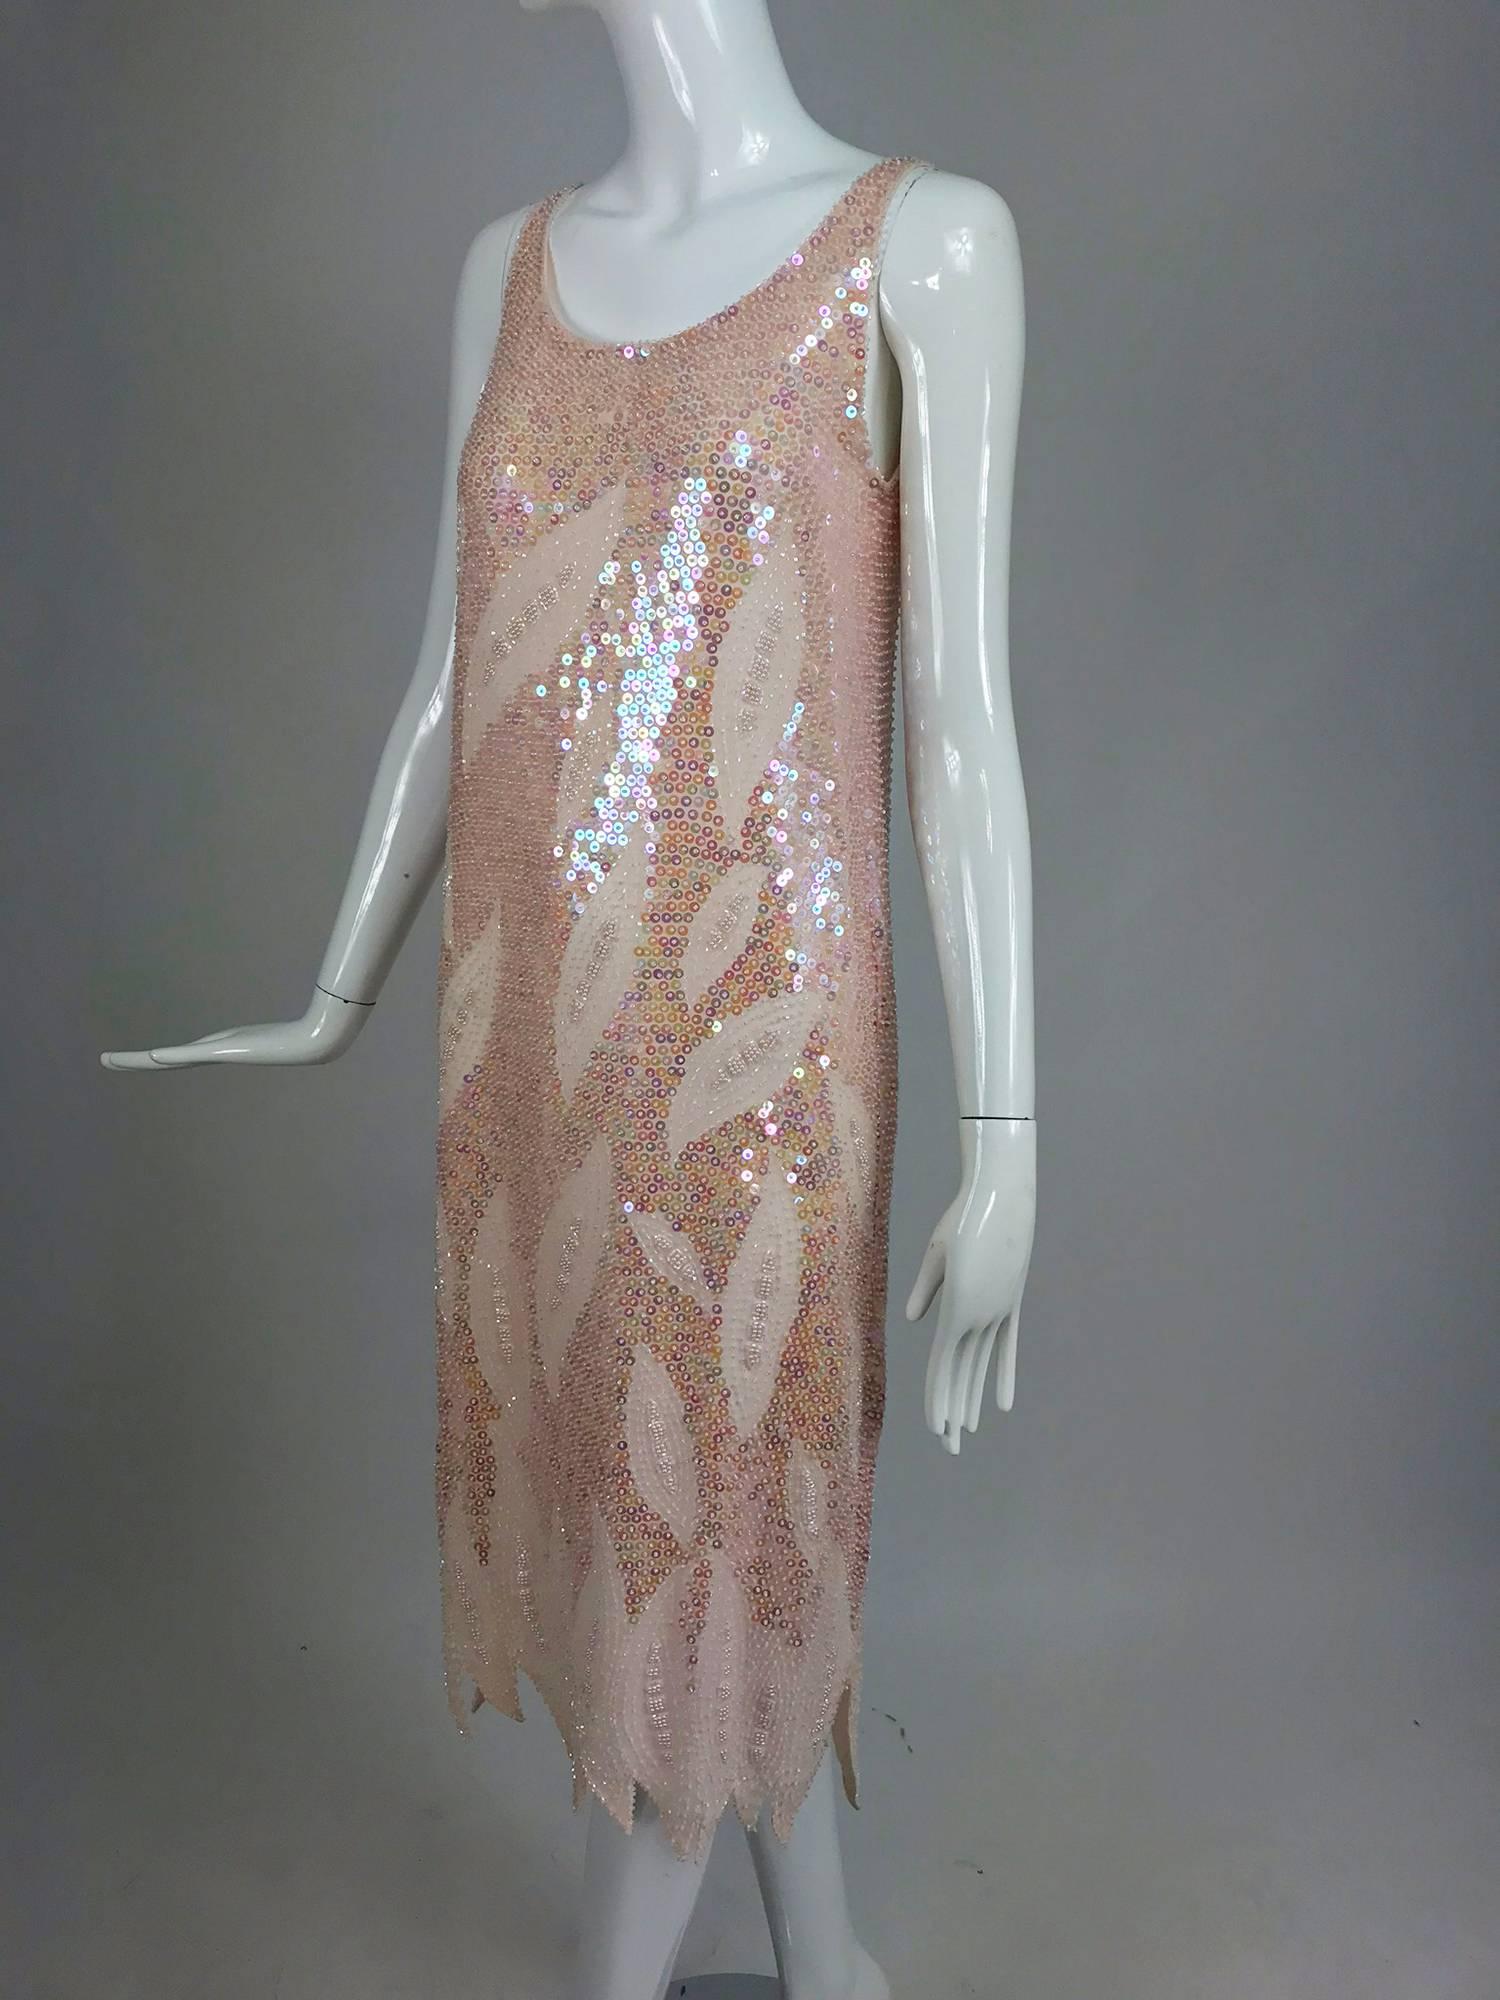 Rosa Kleid mit Pailletten und Perlen am Saum aus den 1980er Jahren...Blassrosa mit schillernden Pailletten, Rundhalsausschnitt, ärmelloses Kleid aus Seide...Unregelmäßiger Saum in Flammenoptik...Vollständig gefüttert in rosa Seide...Fällt klein